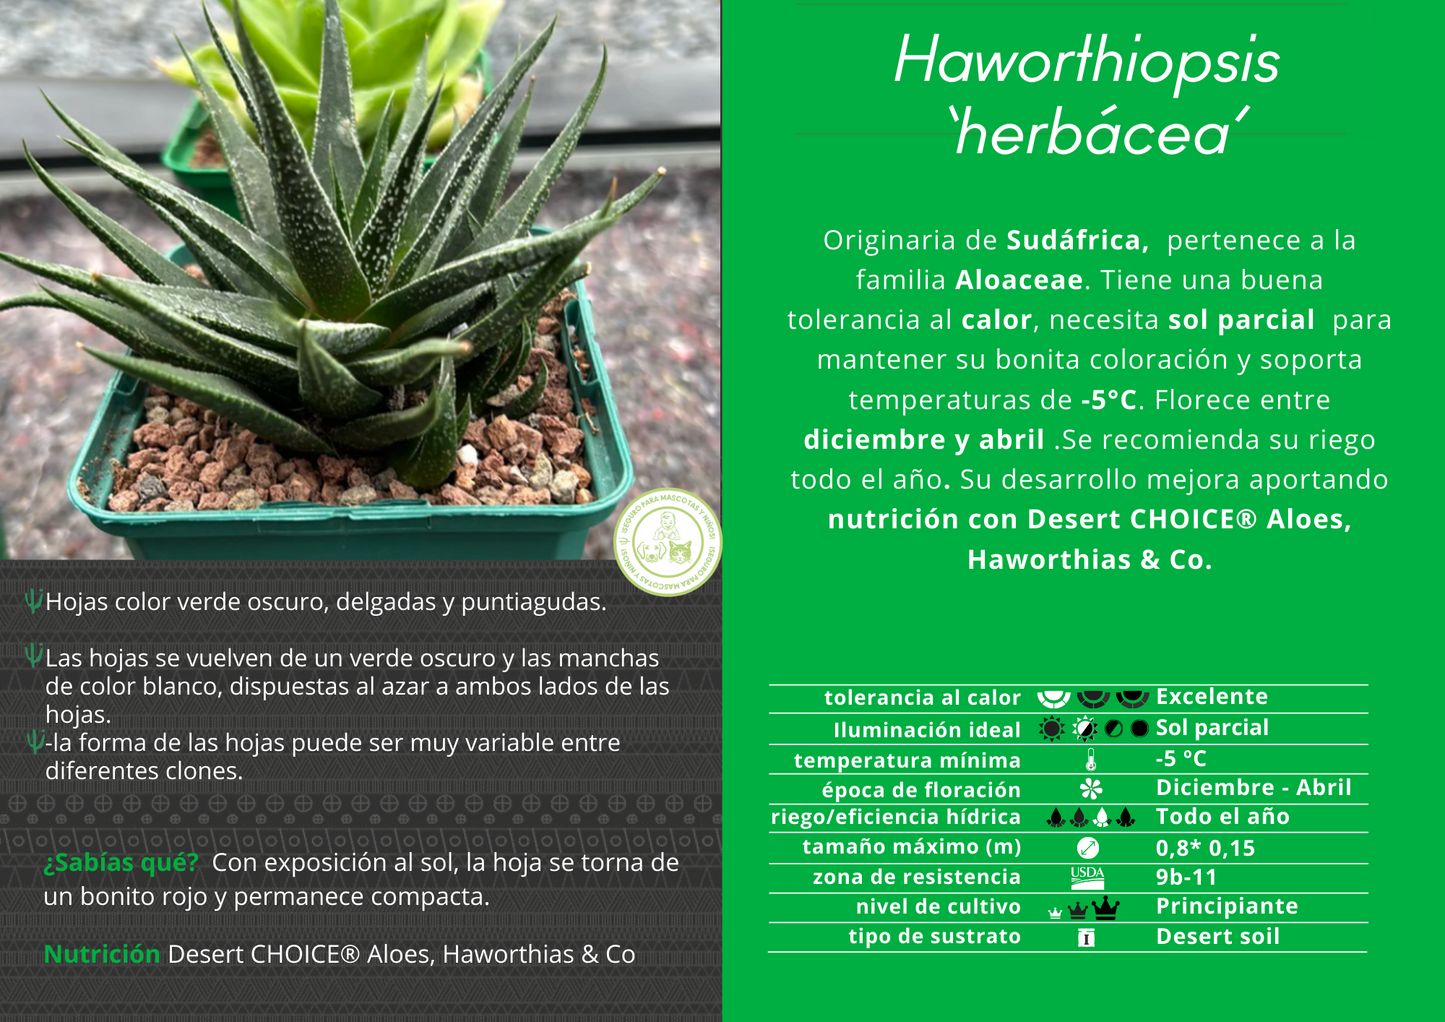 Haworthiopsis 'Herbacea'